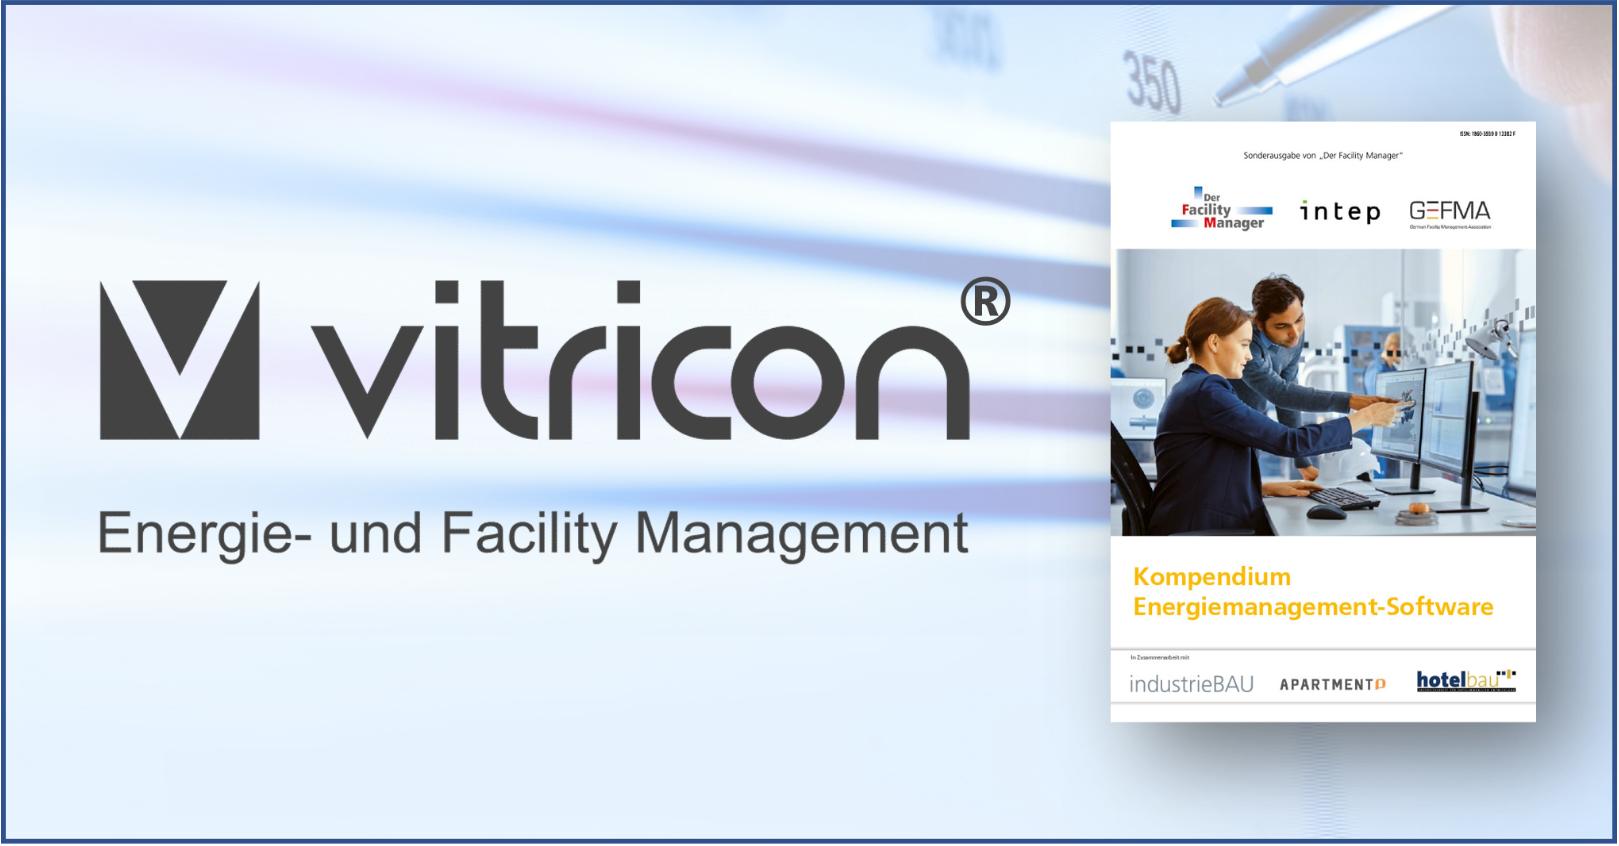 Vitricon - EBCSoft wieder im „Kompendium Energiemanagement-Software“ vertreten